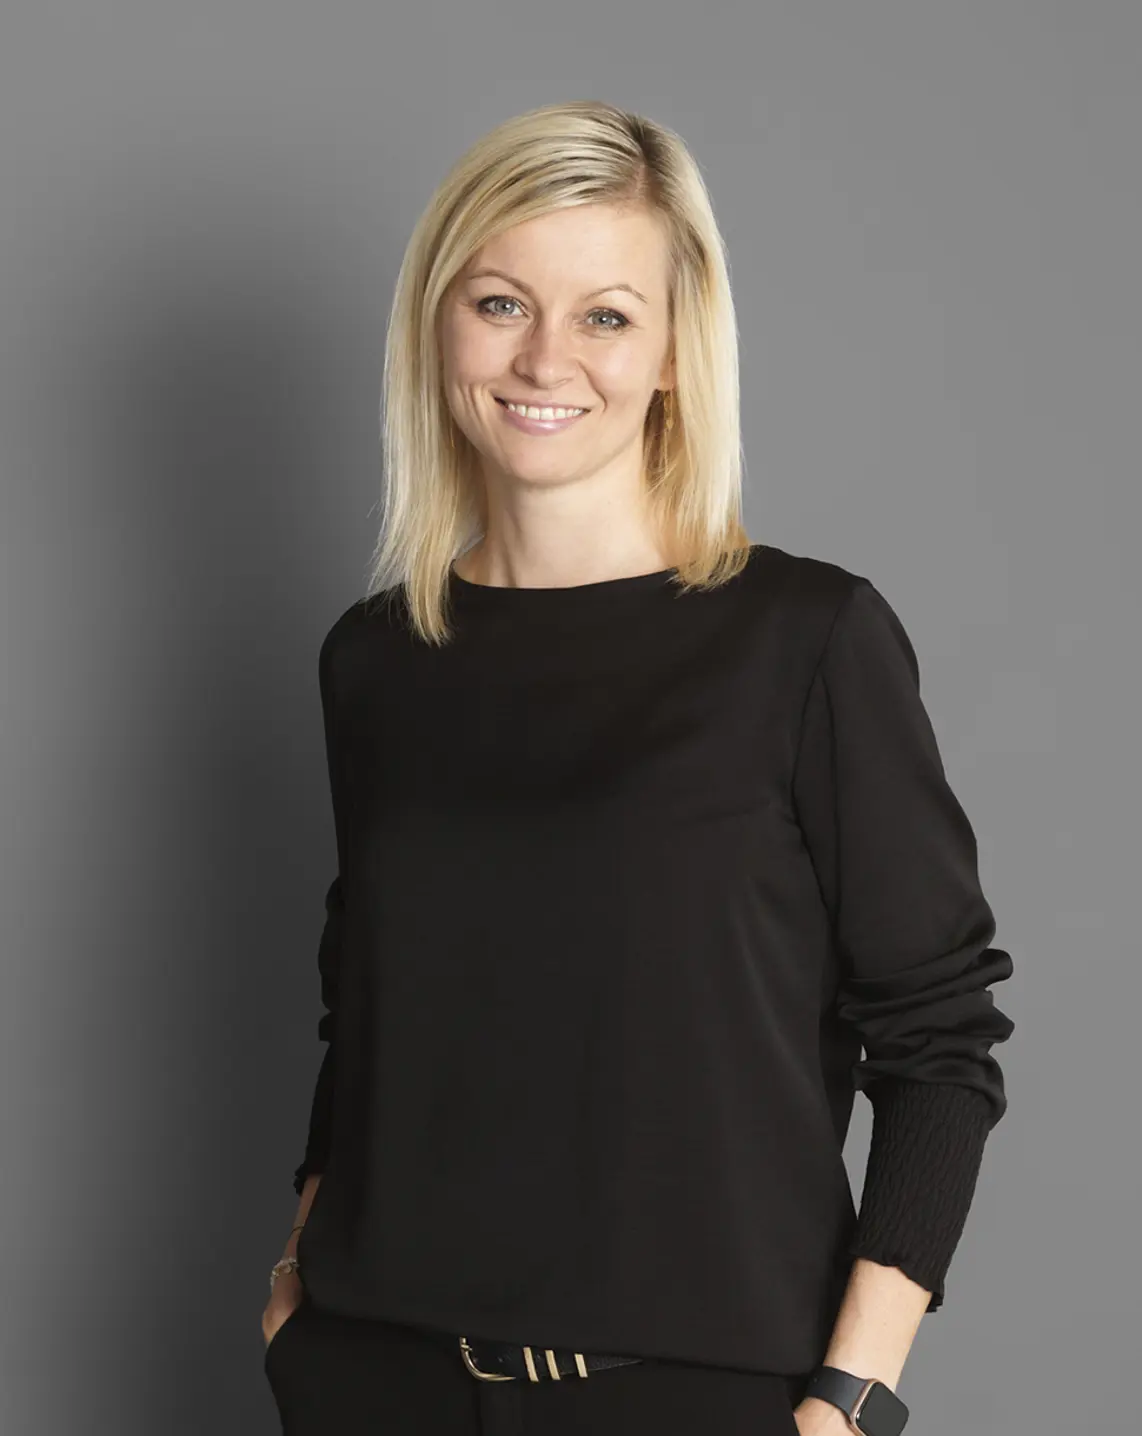 Christina Arlofelt Holmgaard